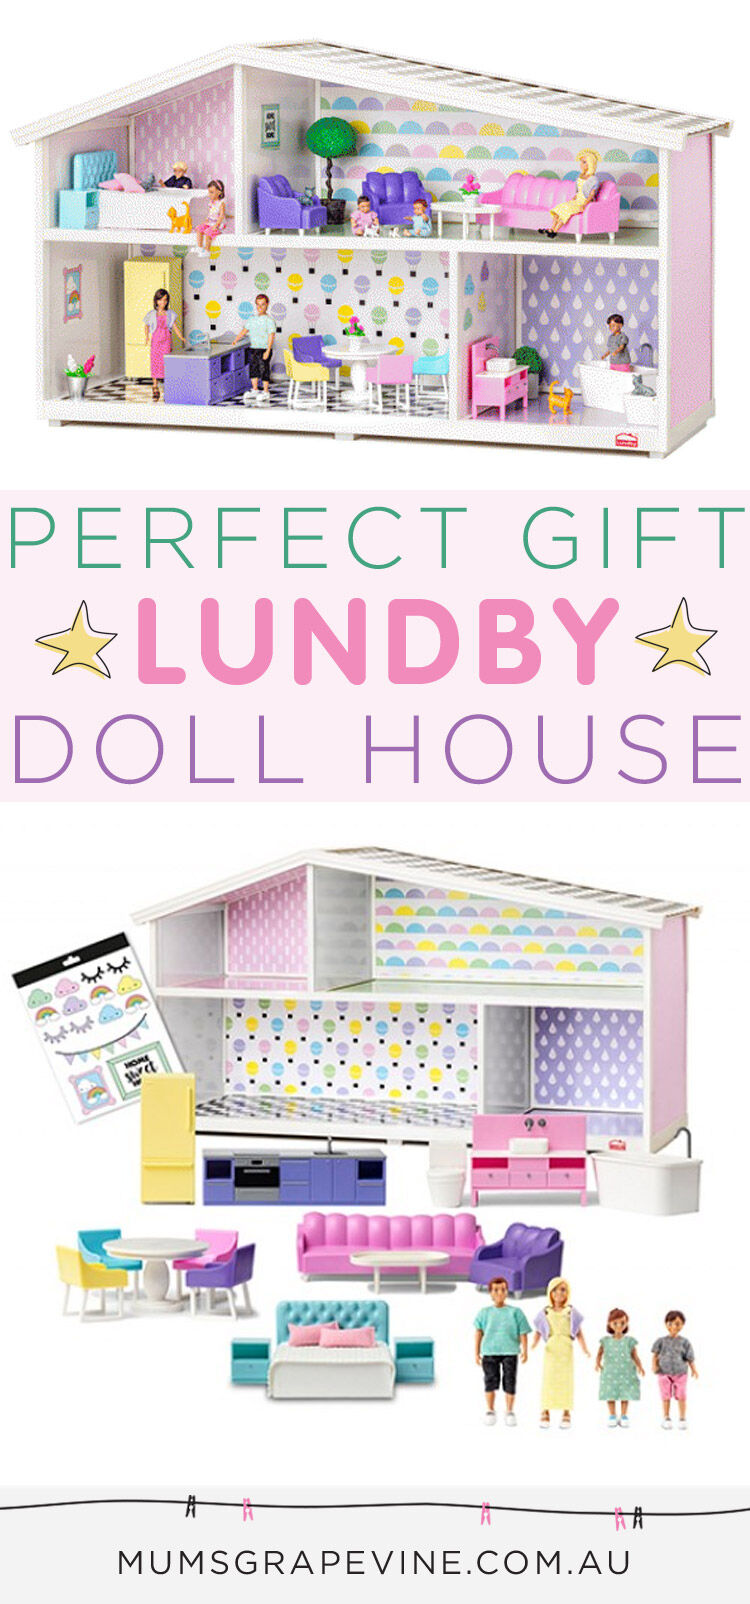 lundby creative dollhouse